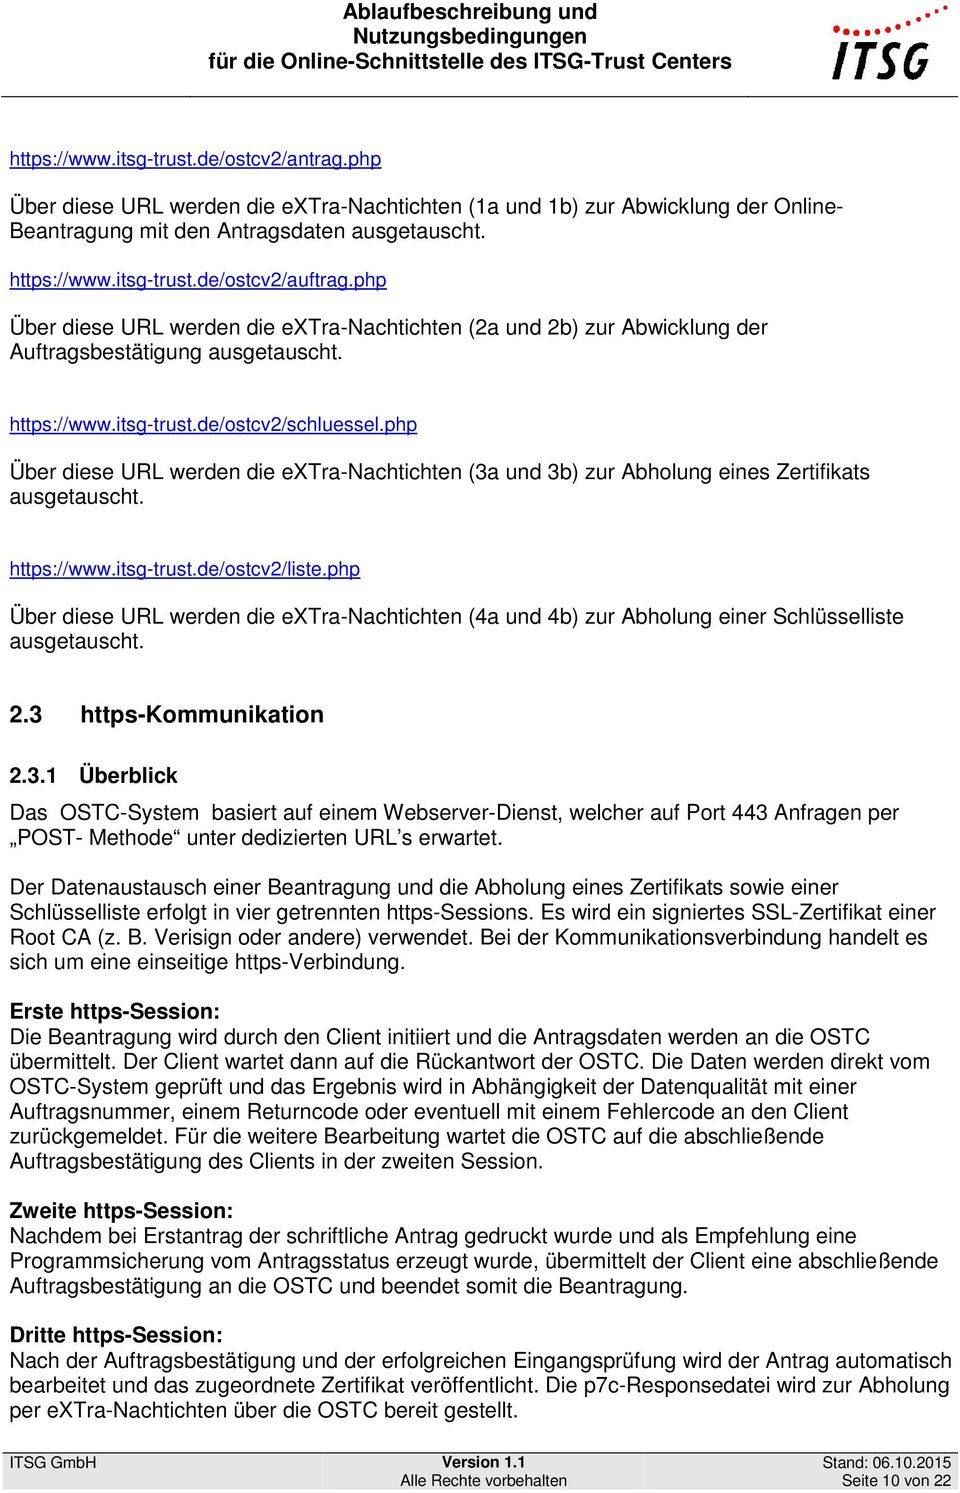 php Über diese URL werden die extra-nachtichten (3a und 3b) zur Abholung eines Zertifikats ausgetauscht. ://www.itsg-trust.de/ostcv2/liste.